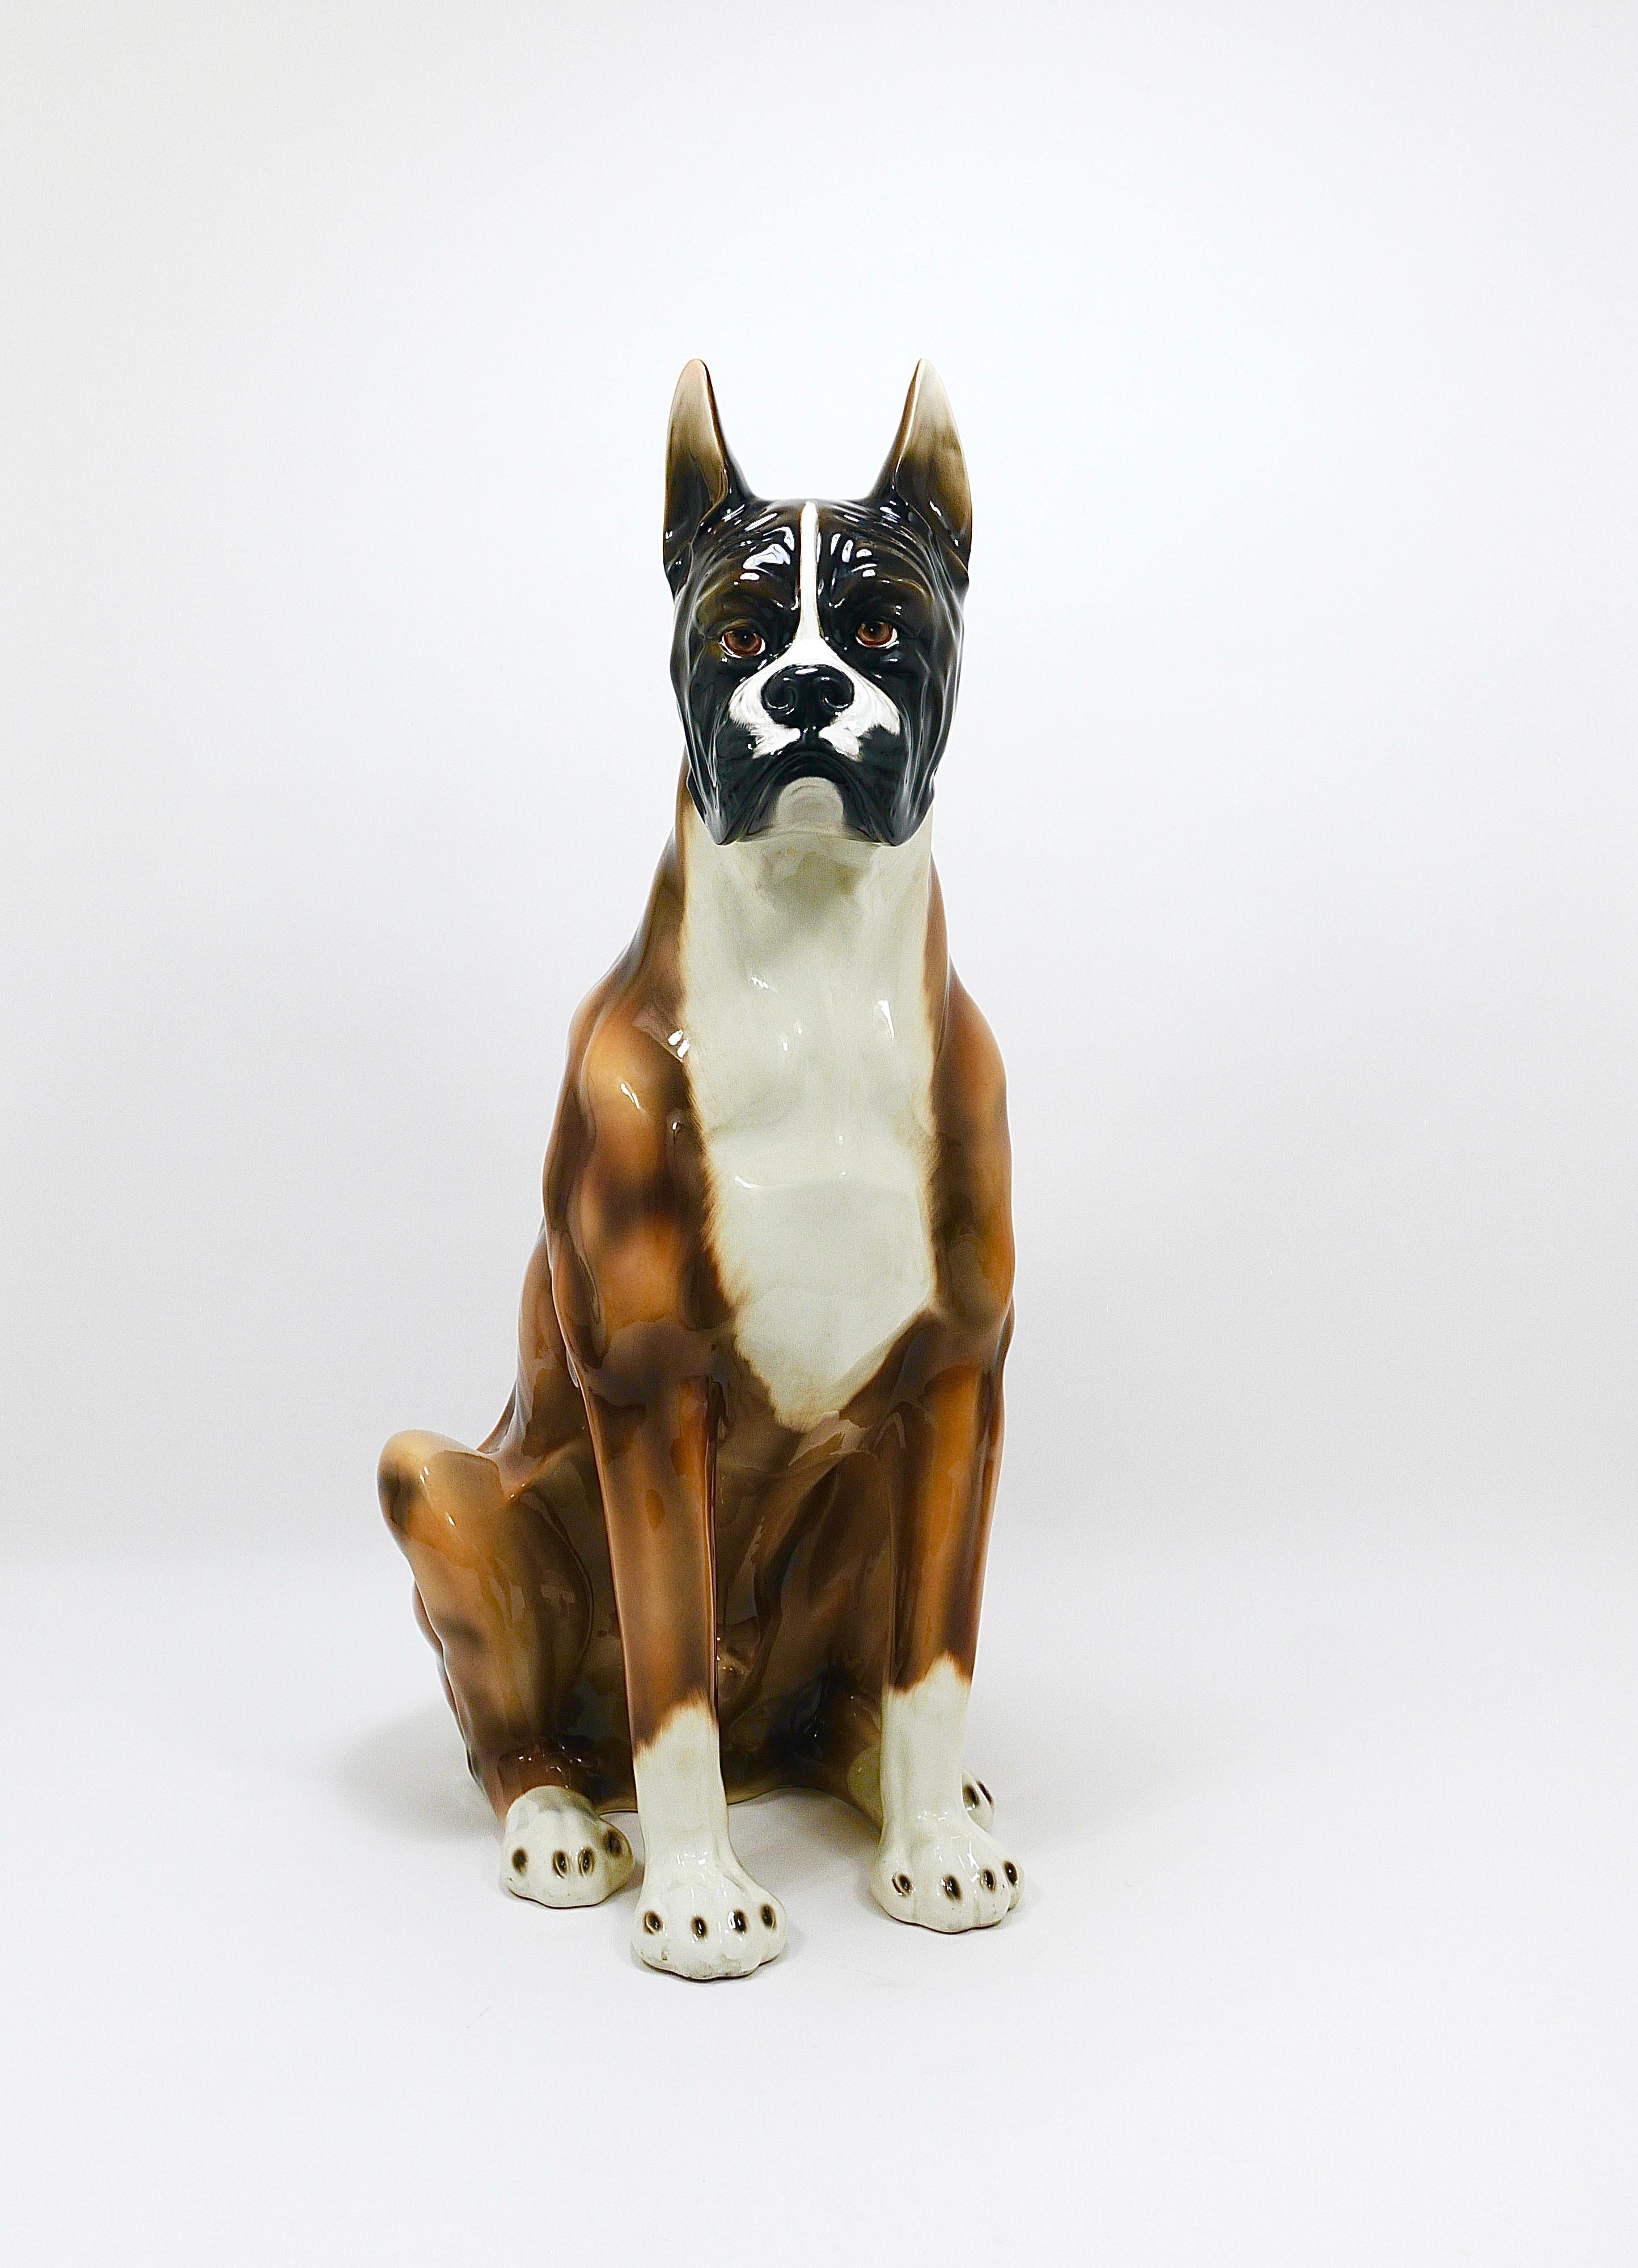 Figurine vintage grandeur nature d'un chien boxer, de 34 pouces de haut. Cette statue artisanale et peinte à la main, en céramique/poterie émaillée, a été produite en Italie dans les années 1970. Il reste en très bon état, présentant une légère